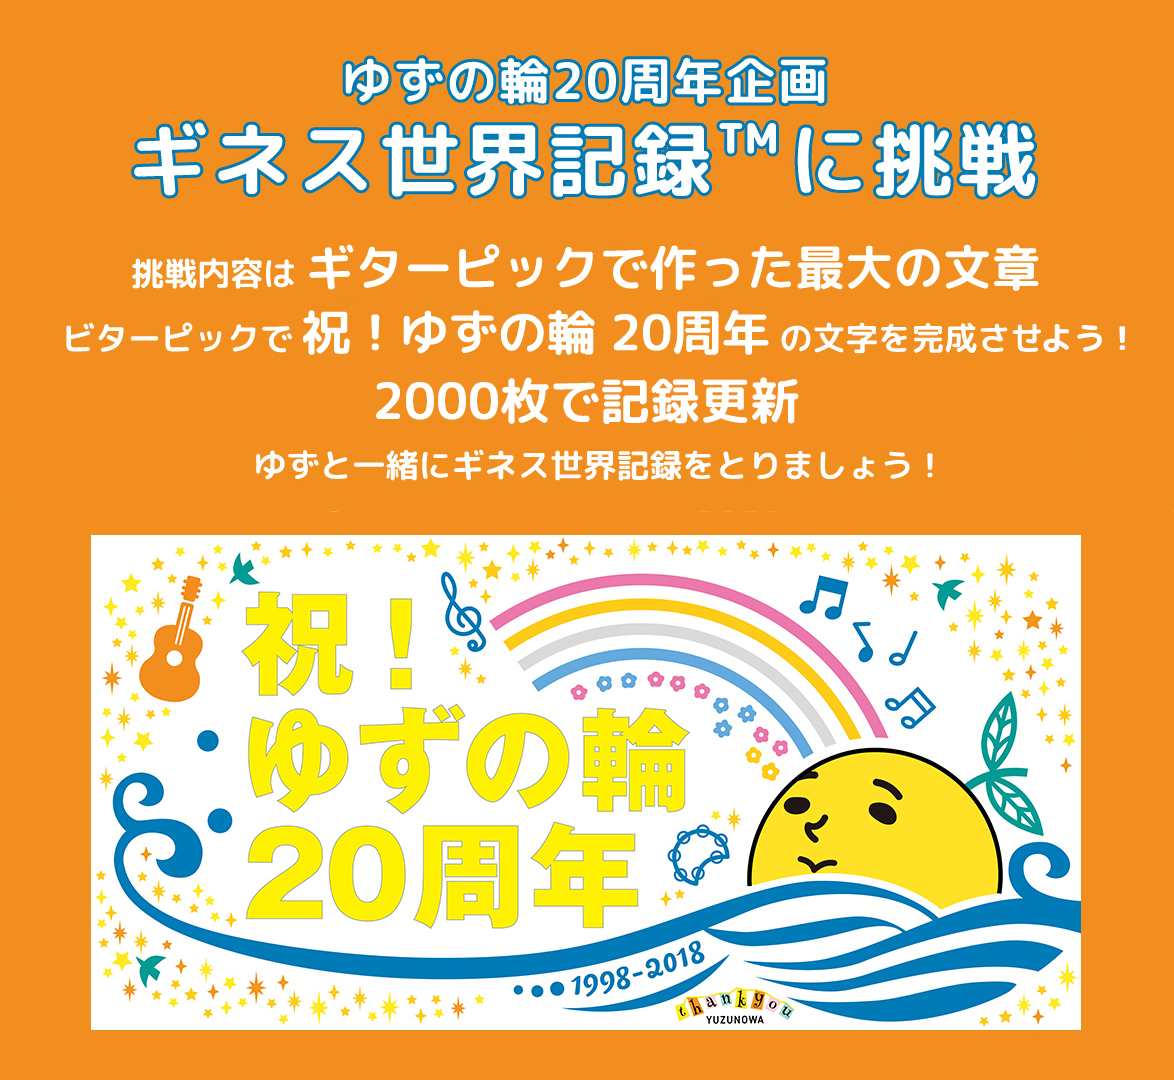 ゆずの輪周年企画 ギネス世界記録 に挑戦 公式 横浜市観光情報サイト Yokohama Official Visitors Guide